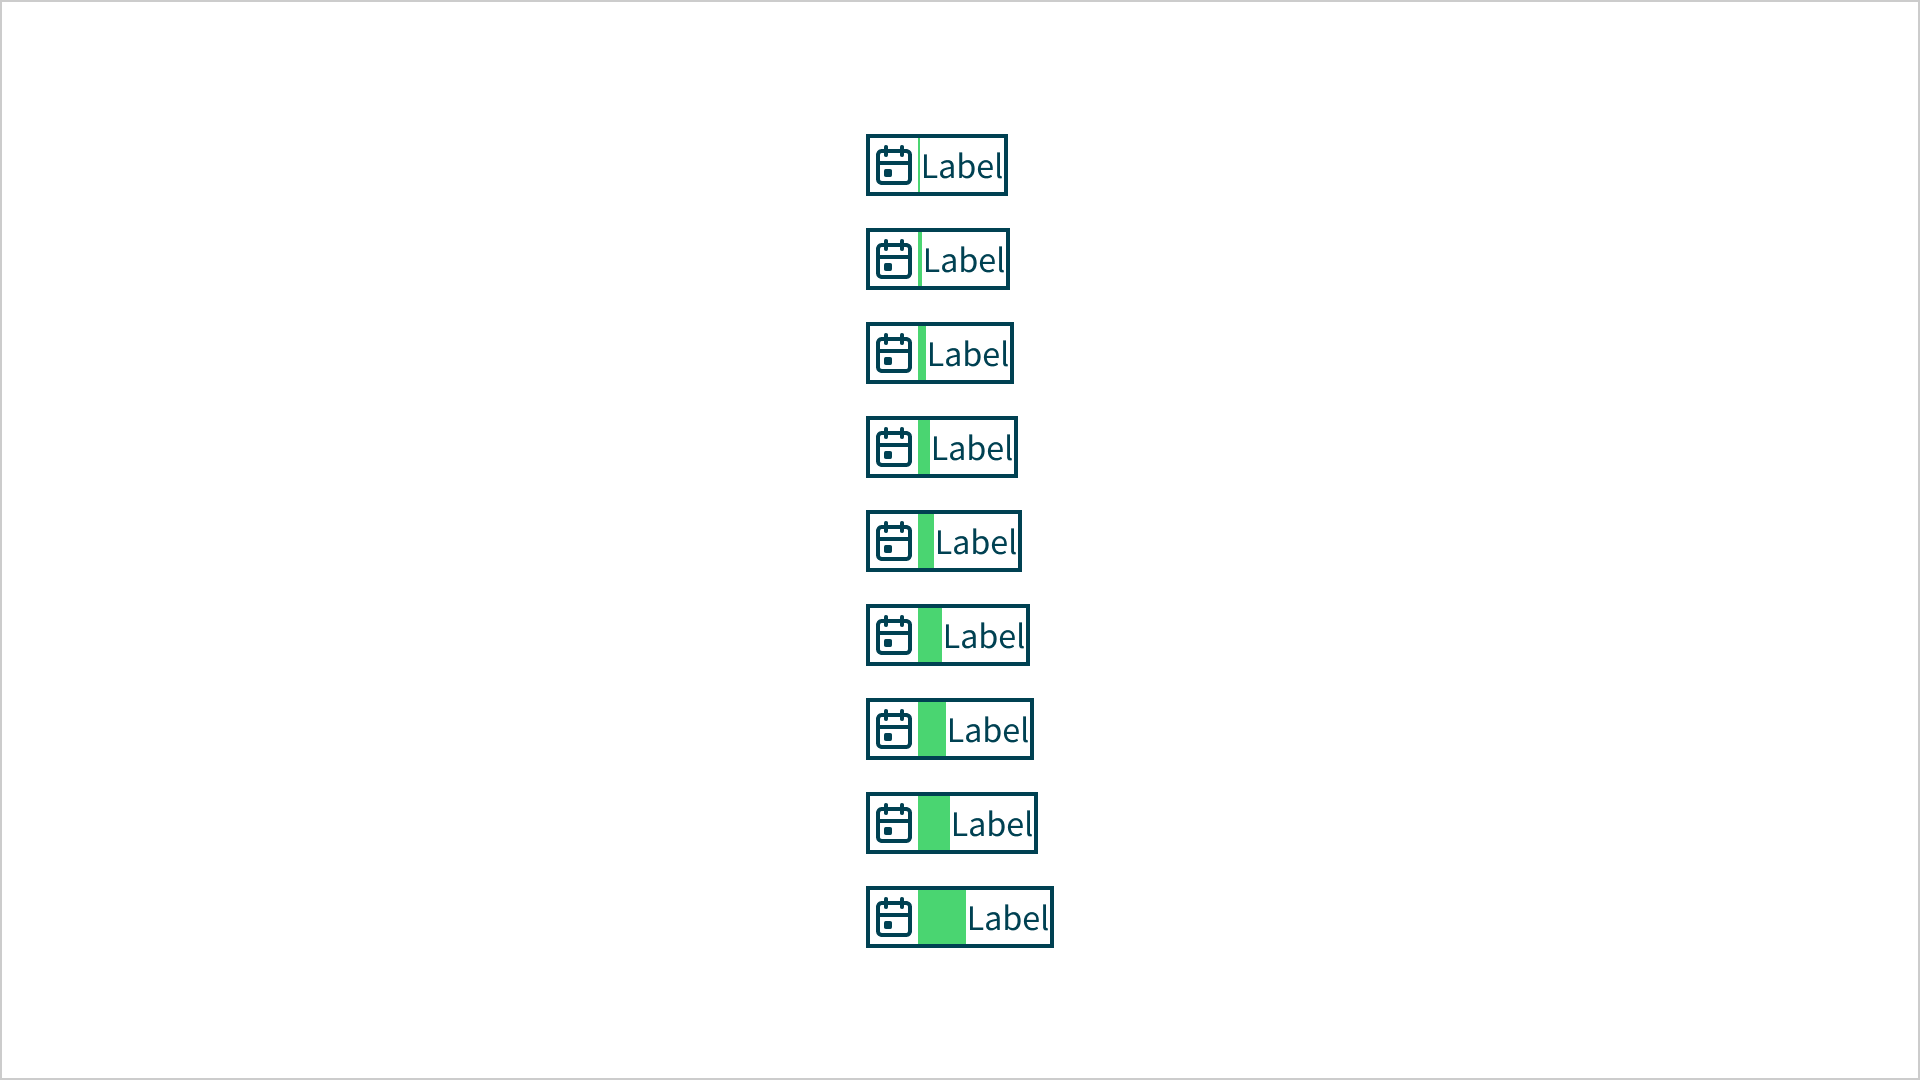 Spacing scale met verticaal 10 blokjes. In elk blokje staat een kalender icoon en de tekst 'label'. Tussen het icoon en de tekst staan groene vlakken. De vlakken worden per blokje breeder.